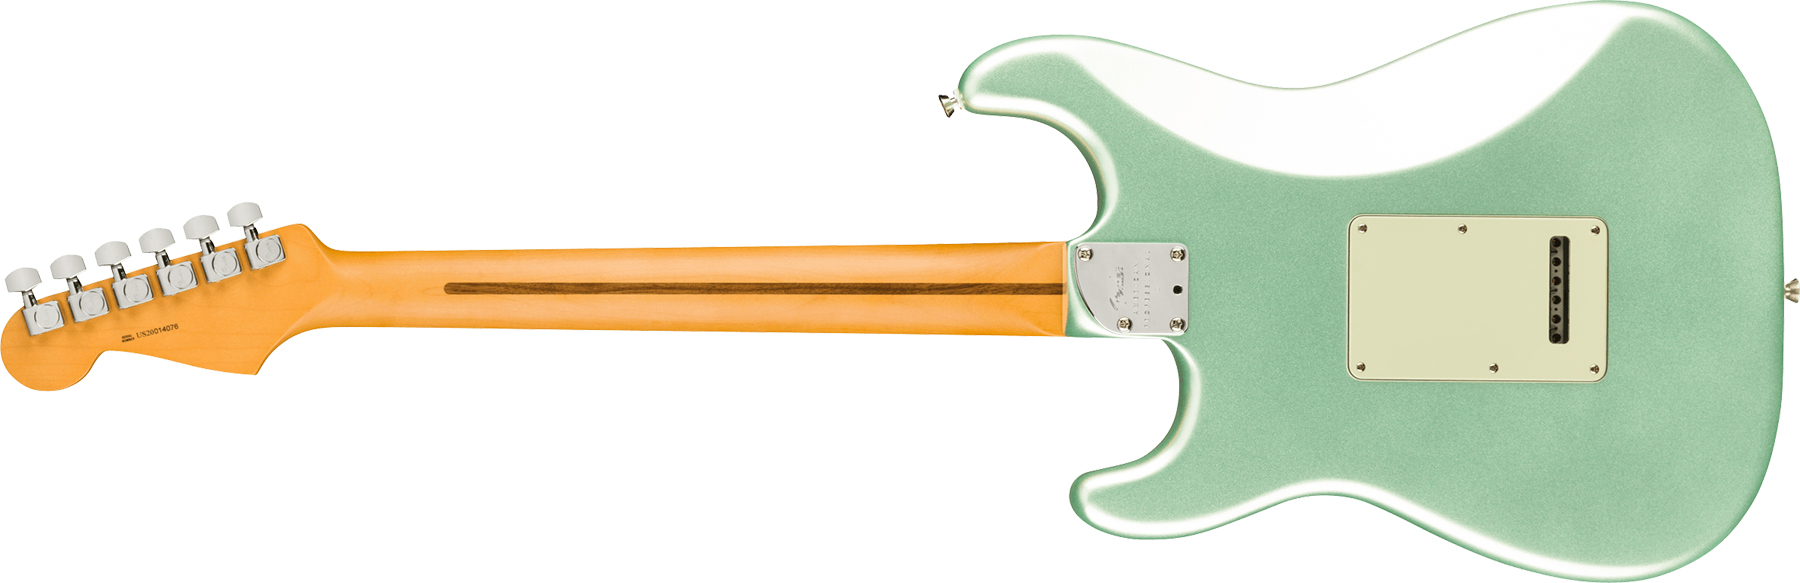 Fender Strat American Professional Ii Lh Gaucher Usa Mn - Mystic Surf Green - E-Gitarre für Linkshänder - Variation 1